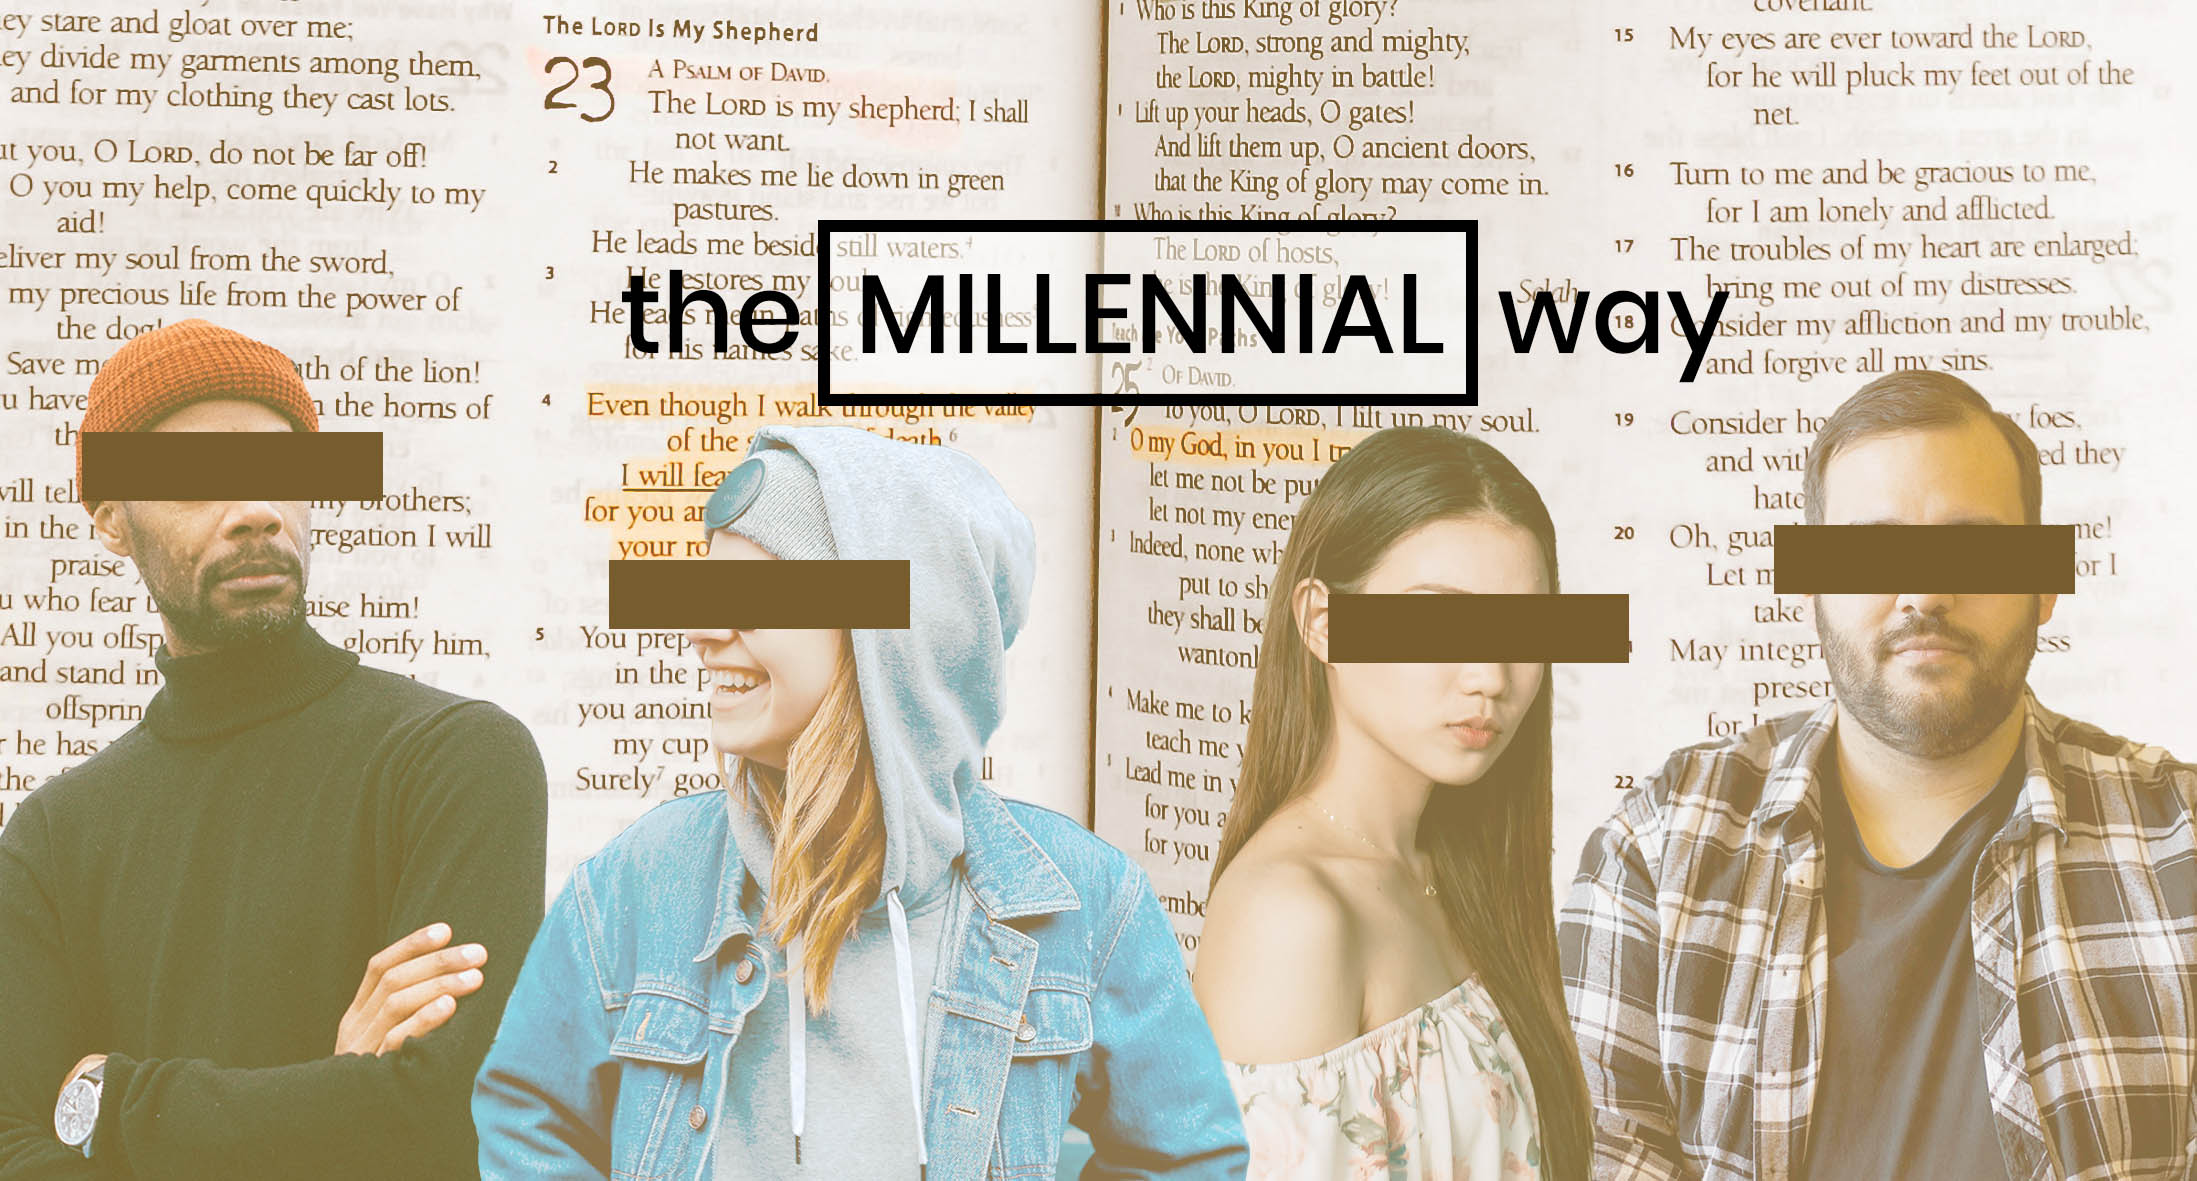 The millennial way